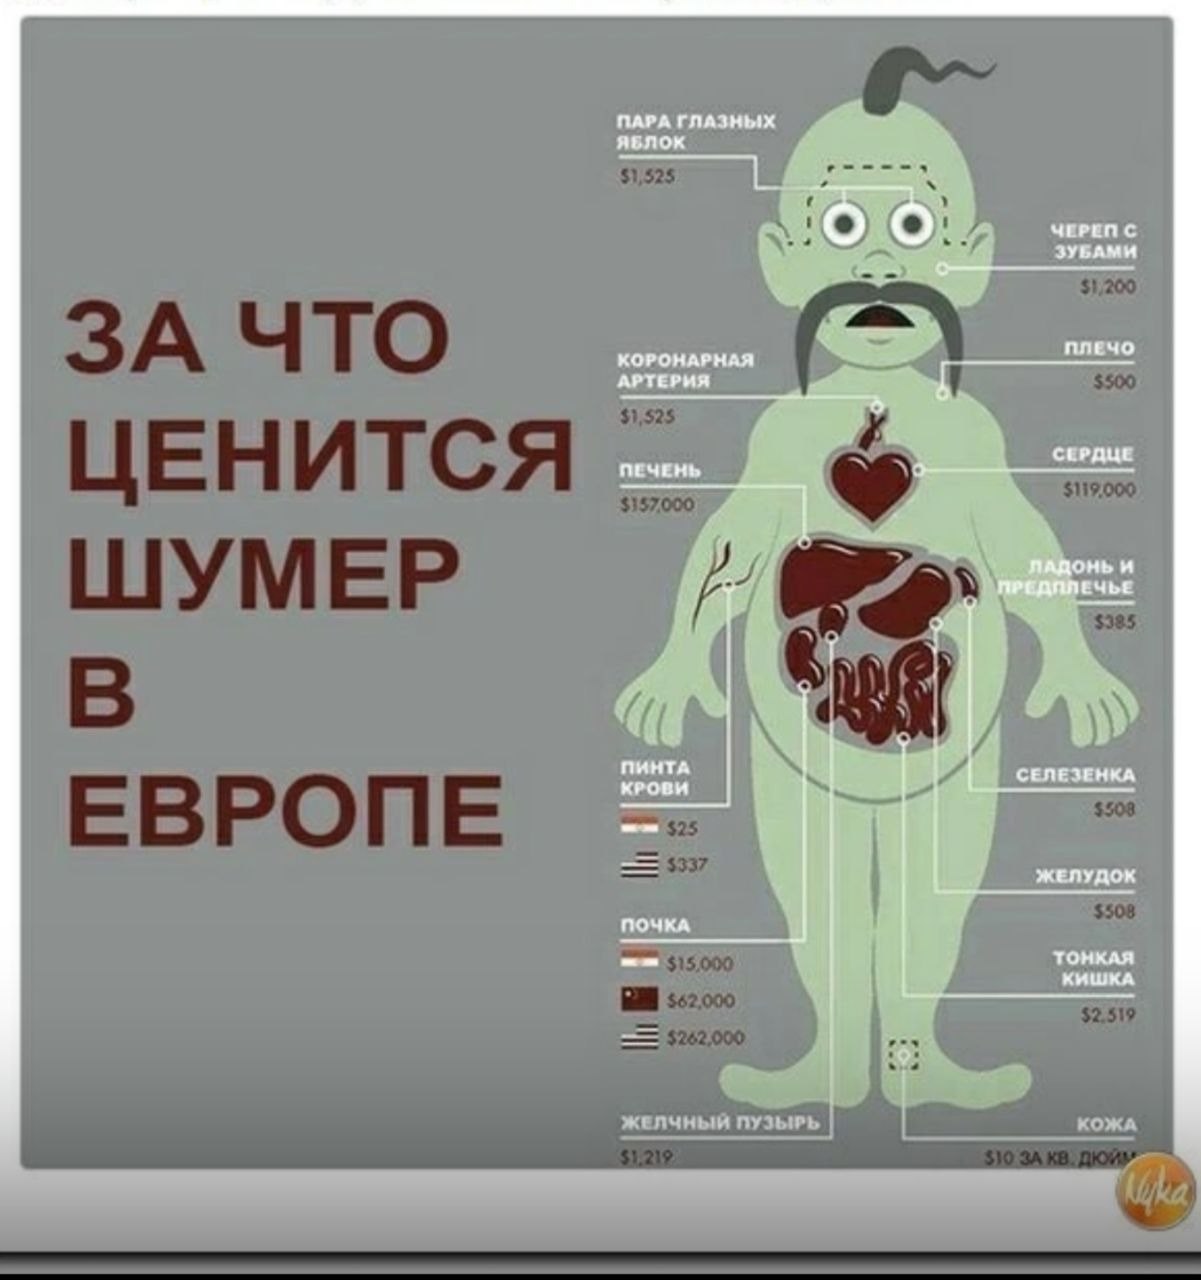 Продажа органов человека. Стоимость органов человека. Стоимость человеческих органов на черном рынке. Колько стоят органы человека.